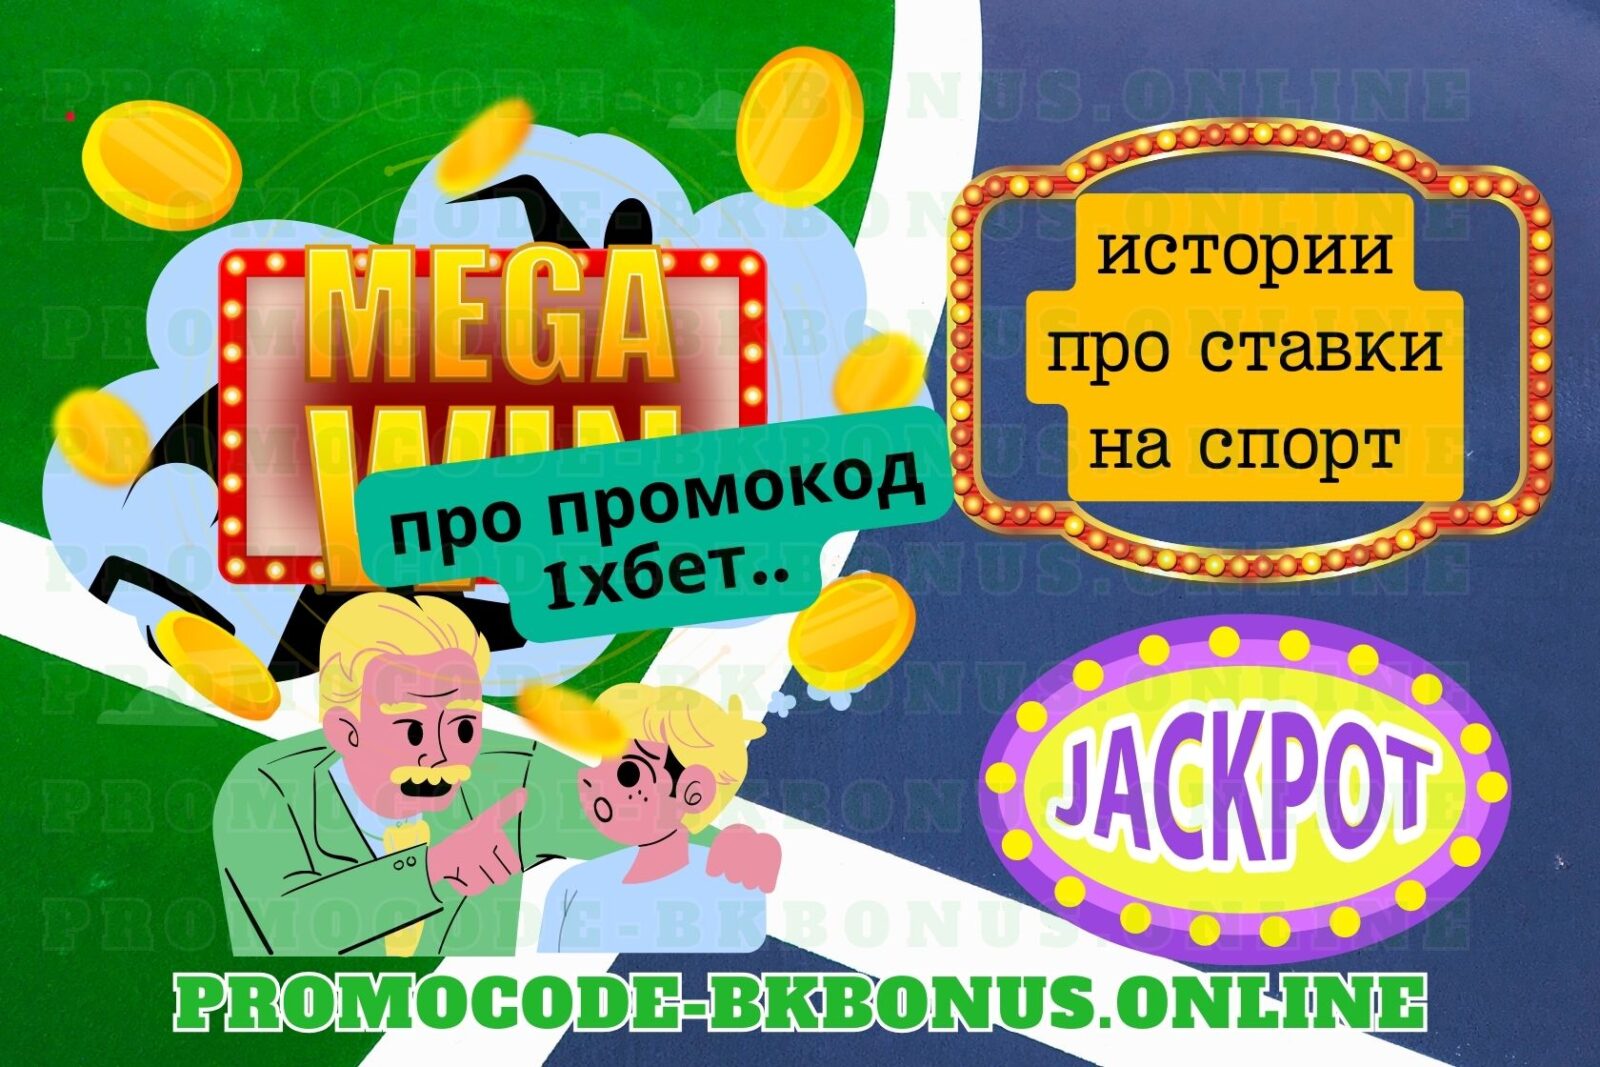 1xBet-promokod-fribet-bonus-bukmekerskaya-kontora-stavki-na-sport, копия, копия, копия, копия (11)